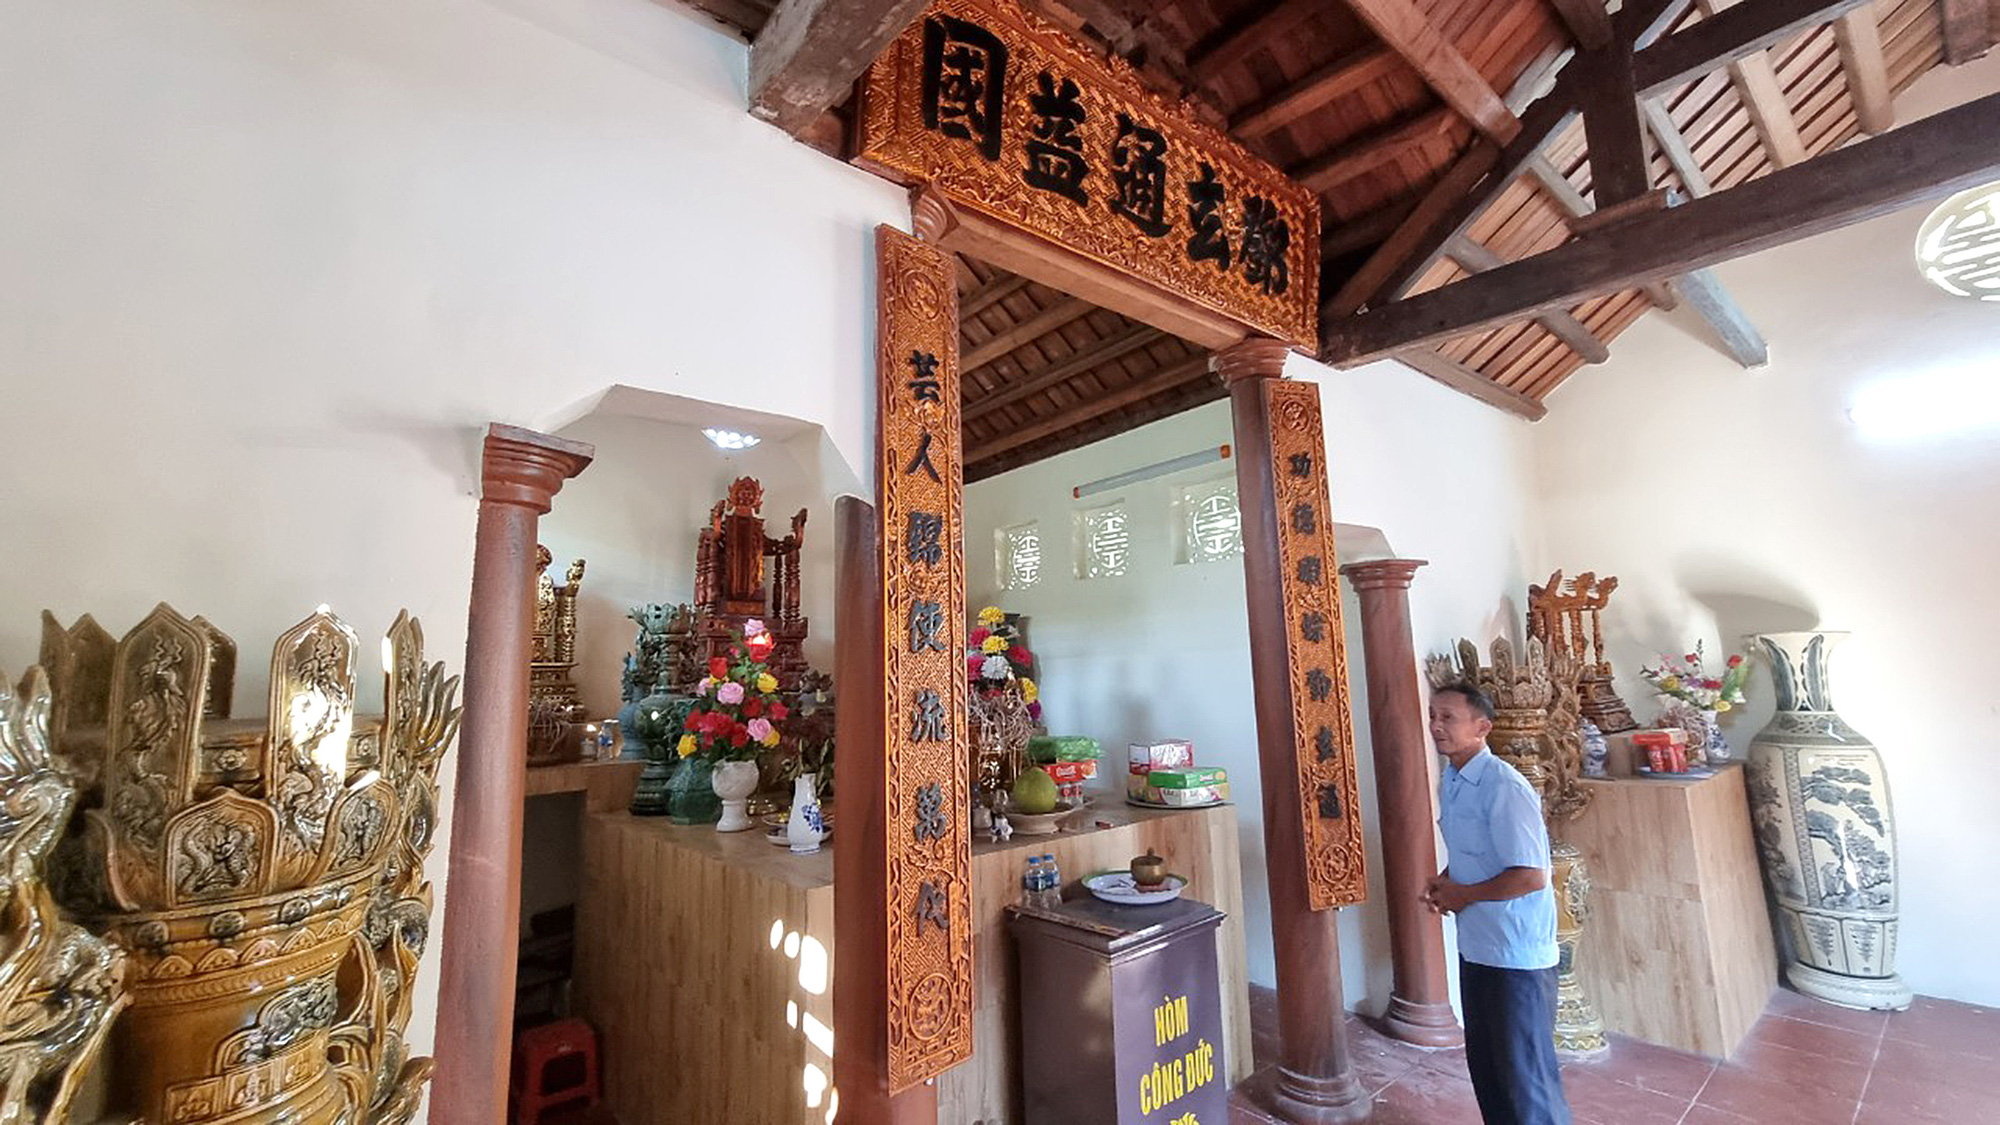 Nơi thờ tự và vinh danh nghệ nhân Đặng Huyền Thông ở thôn Hùng Thắng, Nam Sách, Hải Dương - Ảnh: THÁI LỘC